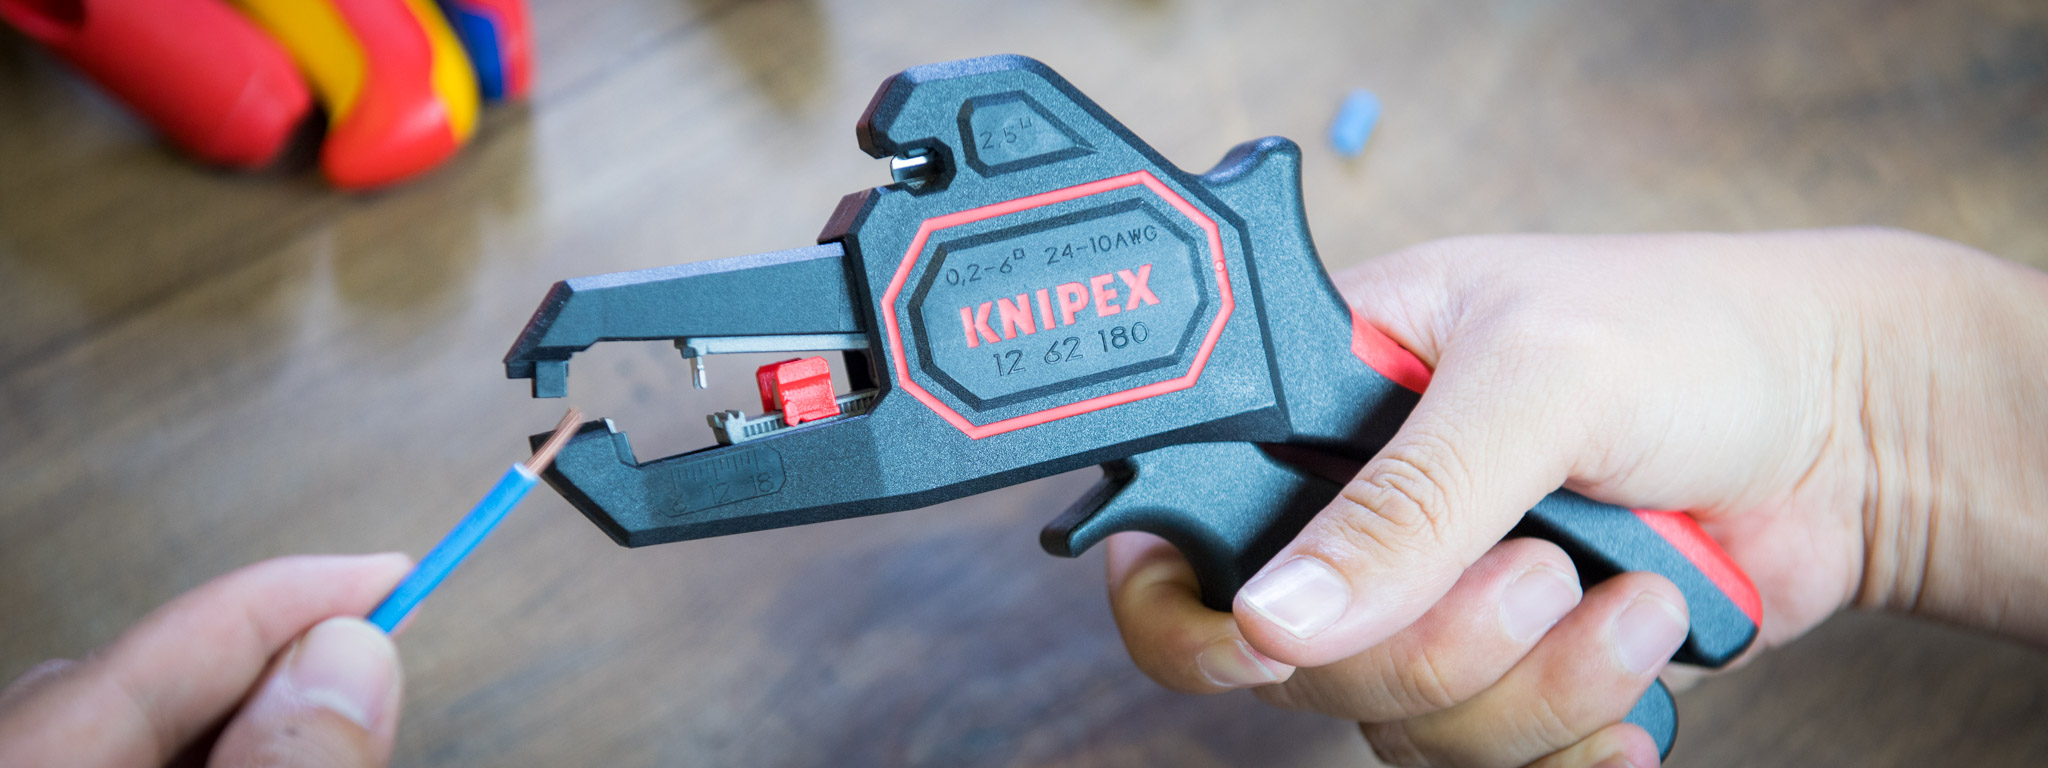 [Video] Trên tay bộ dụng cụ tuốt dây và bấm cốt dây điện của Knipex; thiết kế rất thông minh